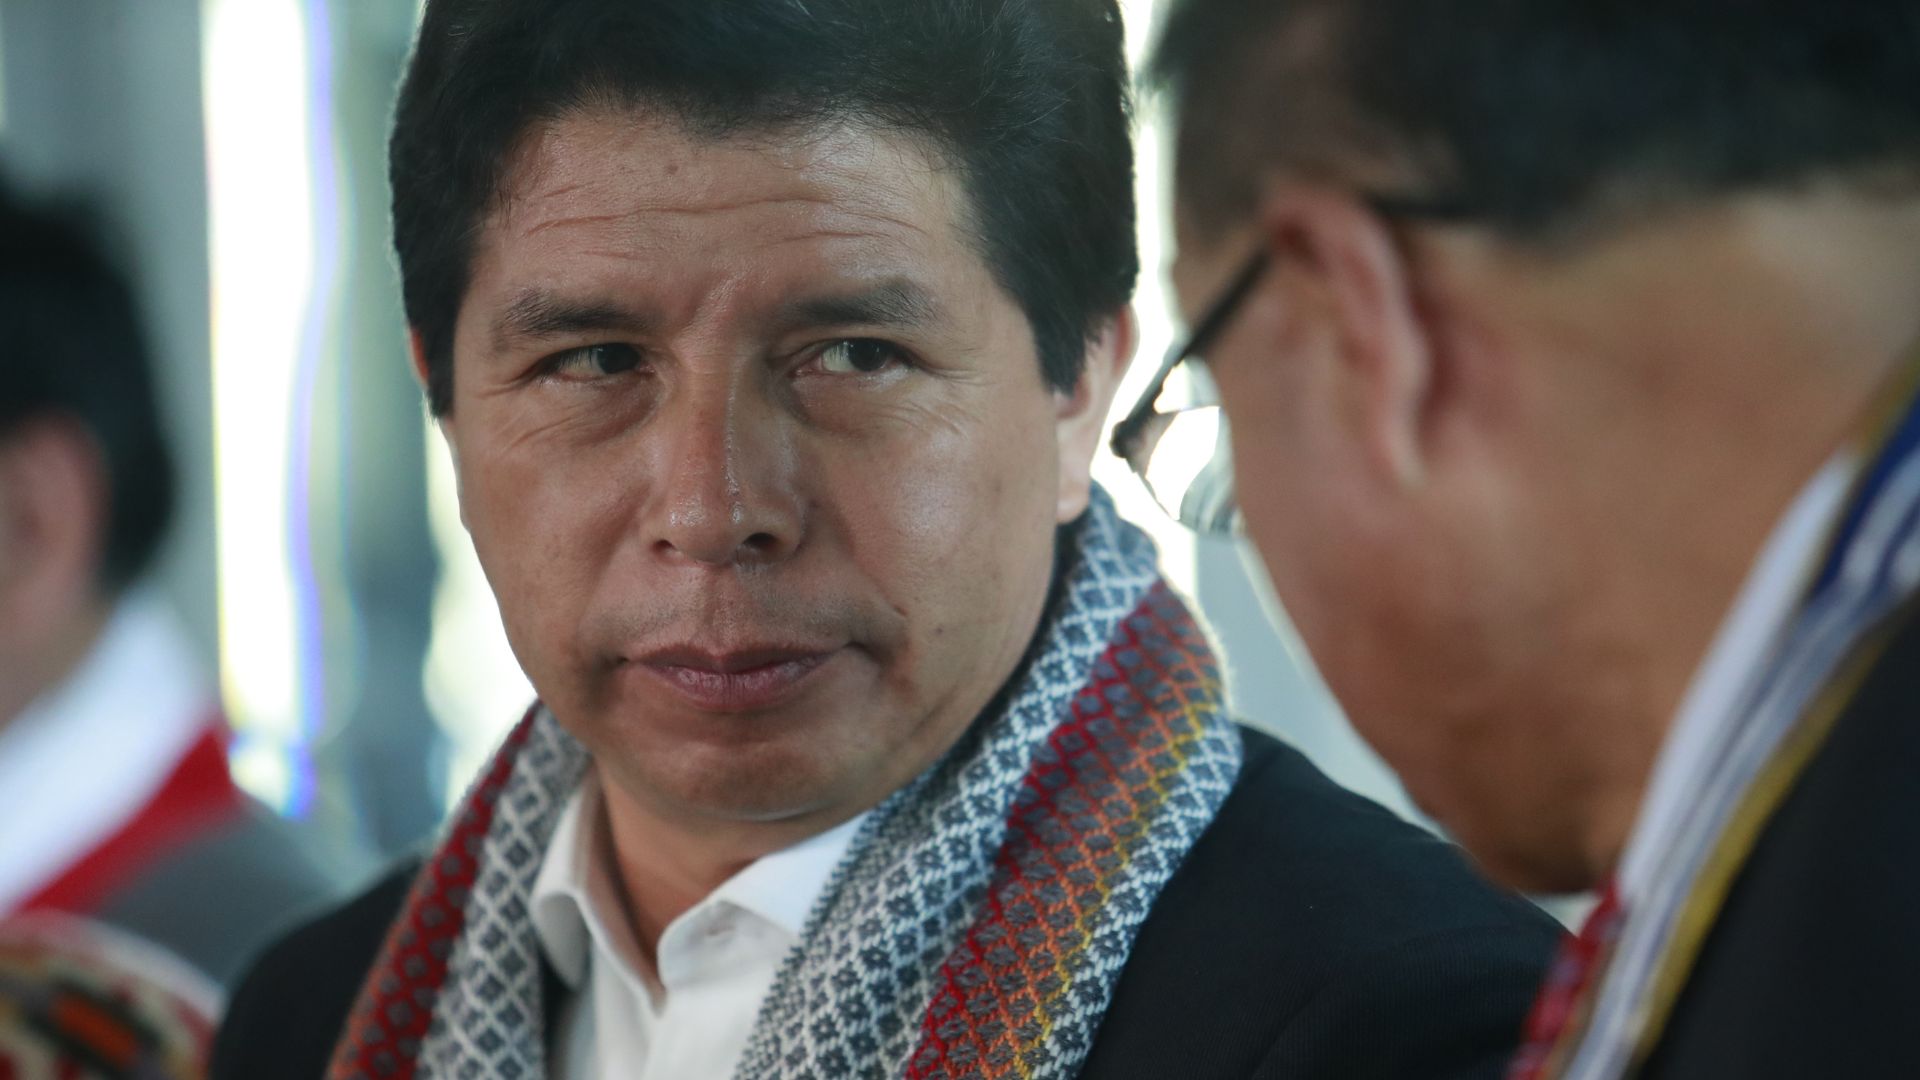 El expresidente se pronunció sobre la crisis política que vive Perú. Dijo que hay que reflexionar.